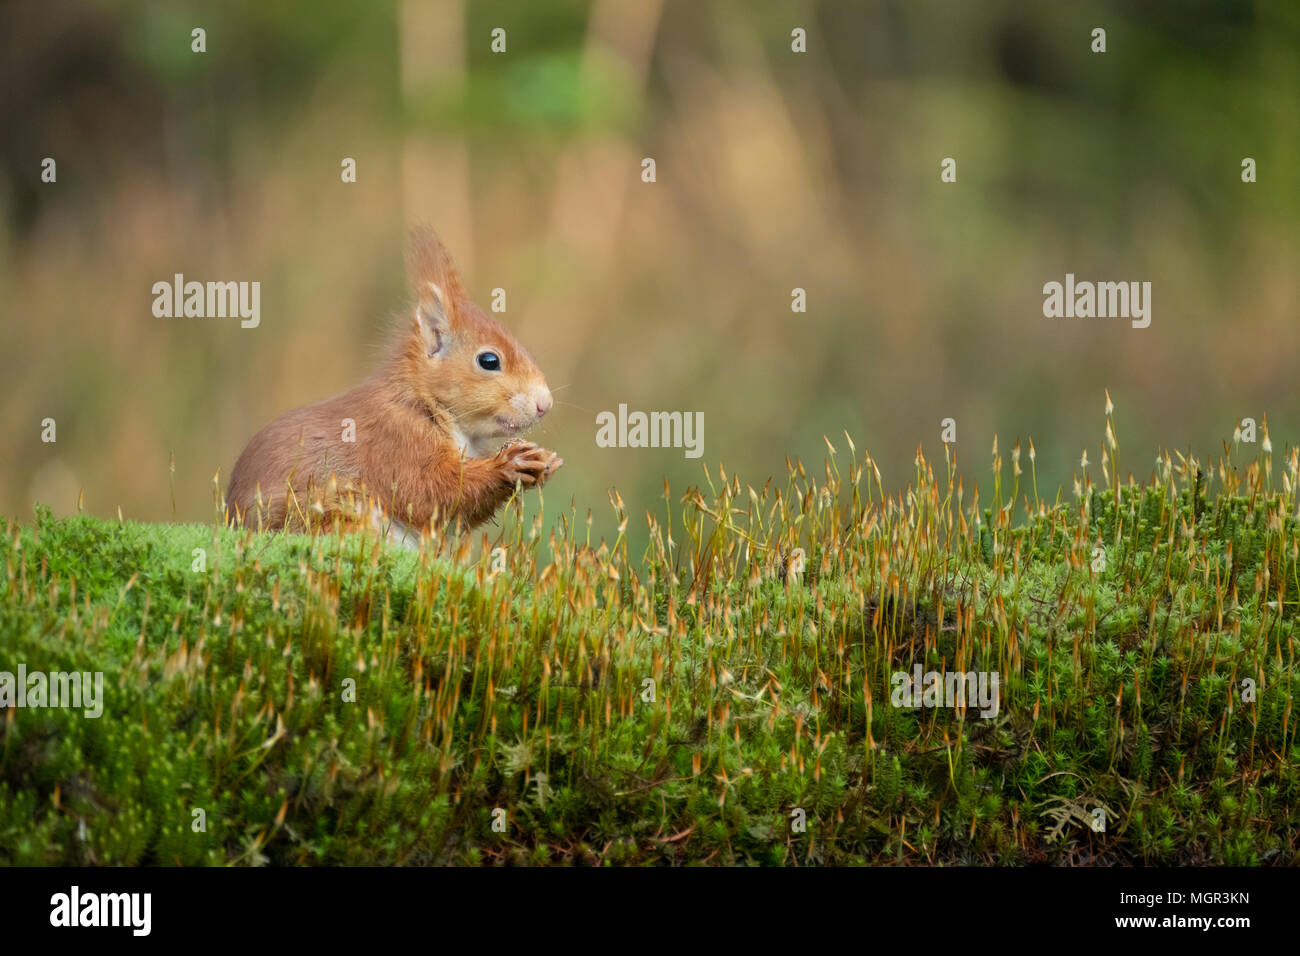 L'écureuil roux grignote une noix et se repose paisiblement dans l'herbe Banque D'Images